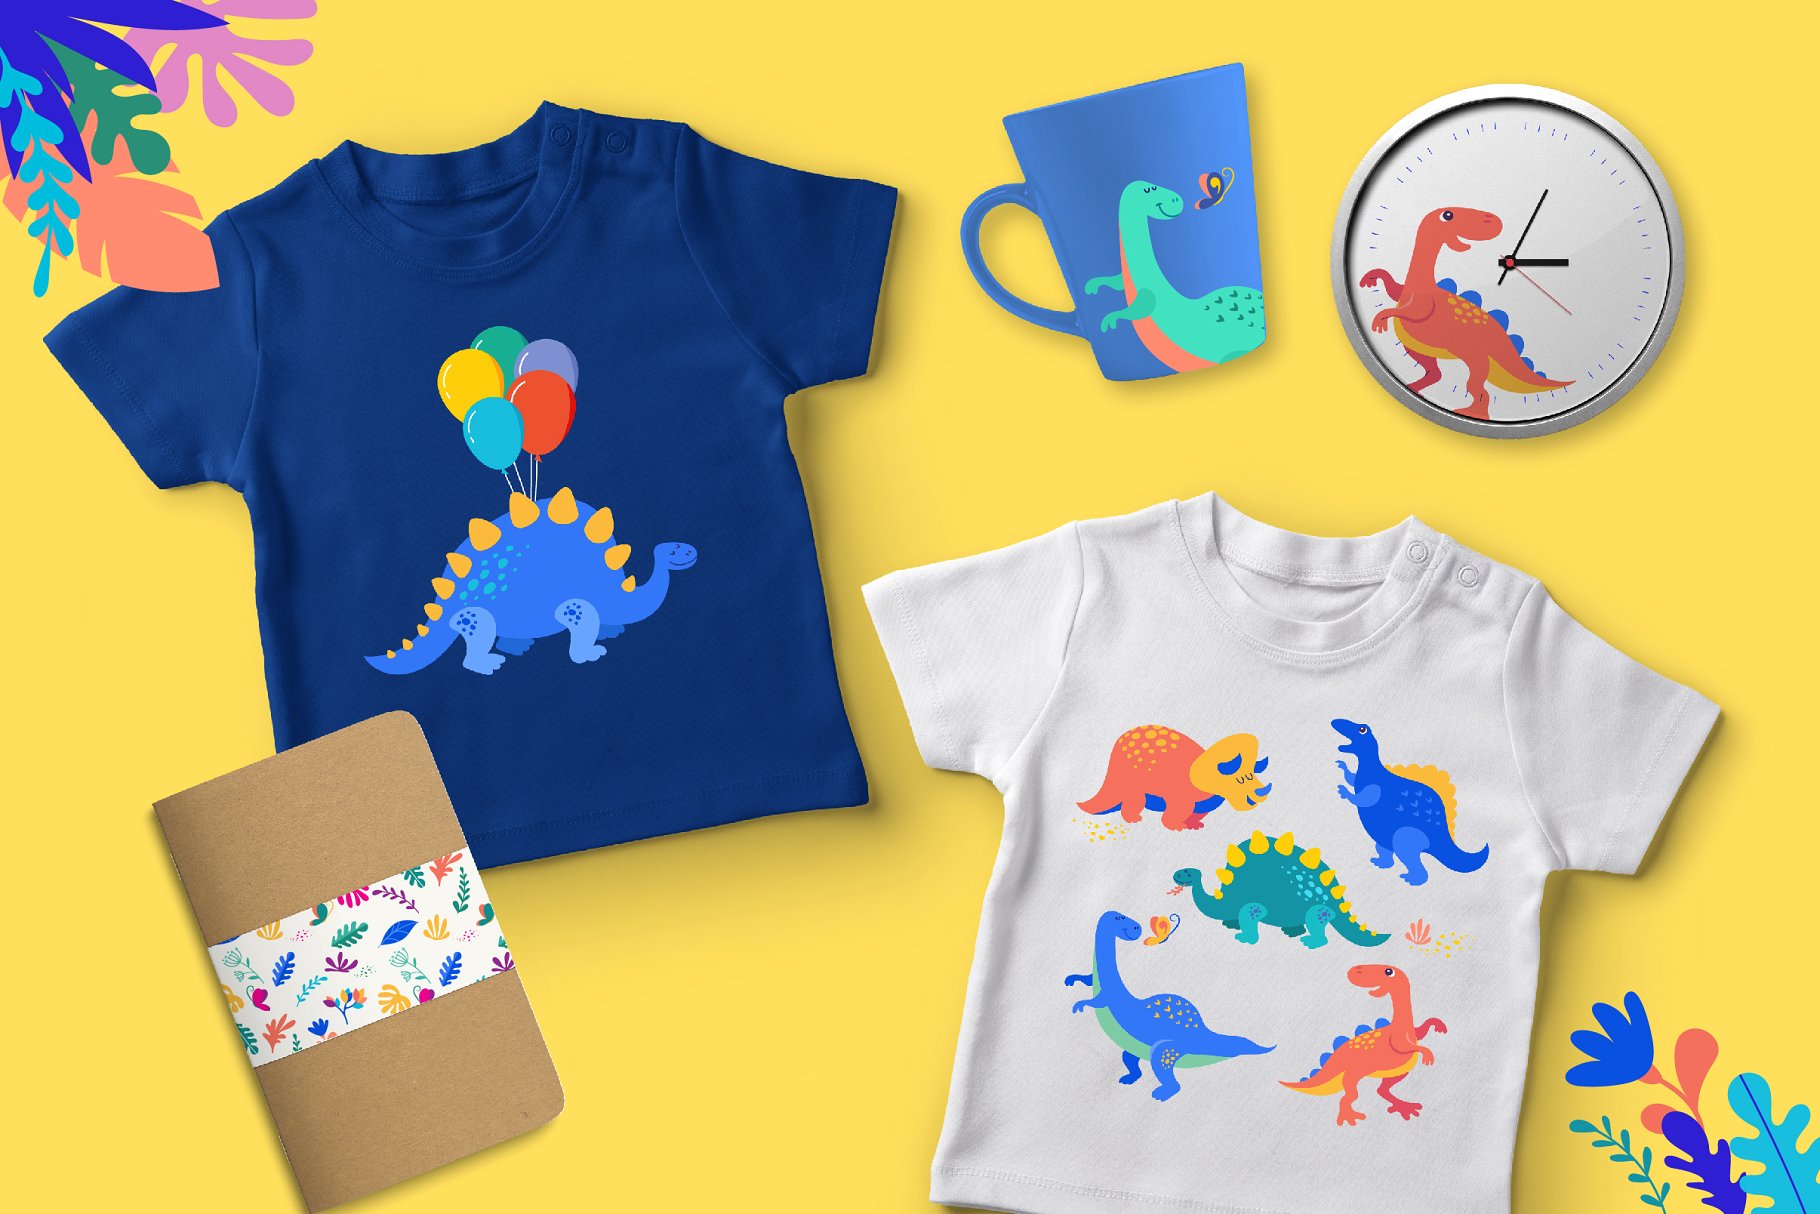 可爱的恐龙插图设计工具包 it’s DINO time – cute dinosaurs kit插图1